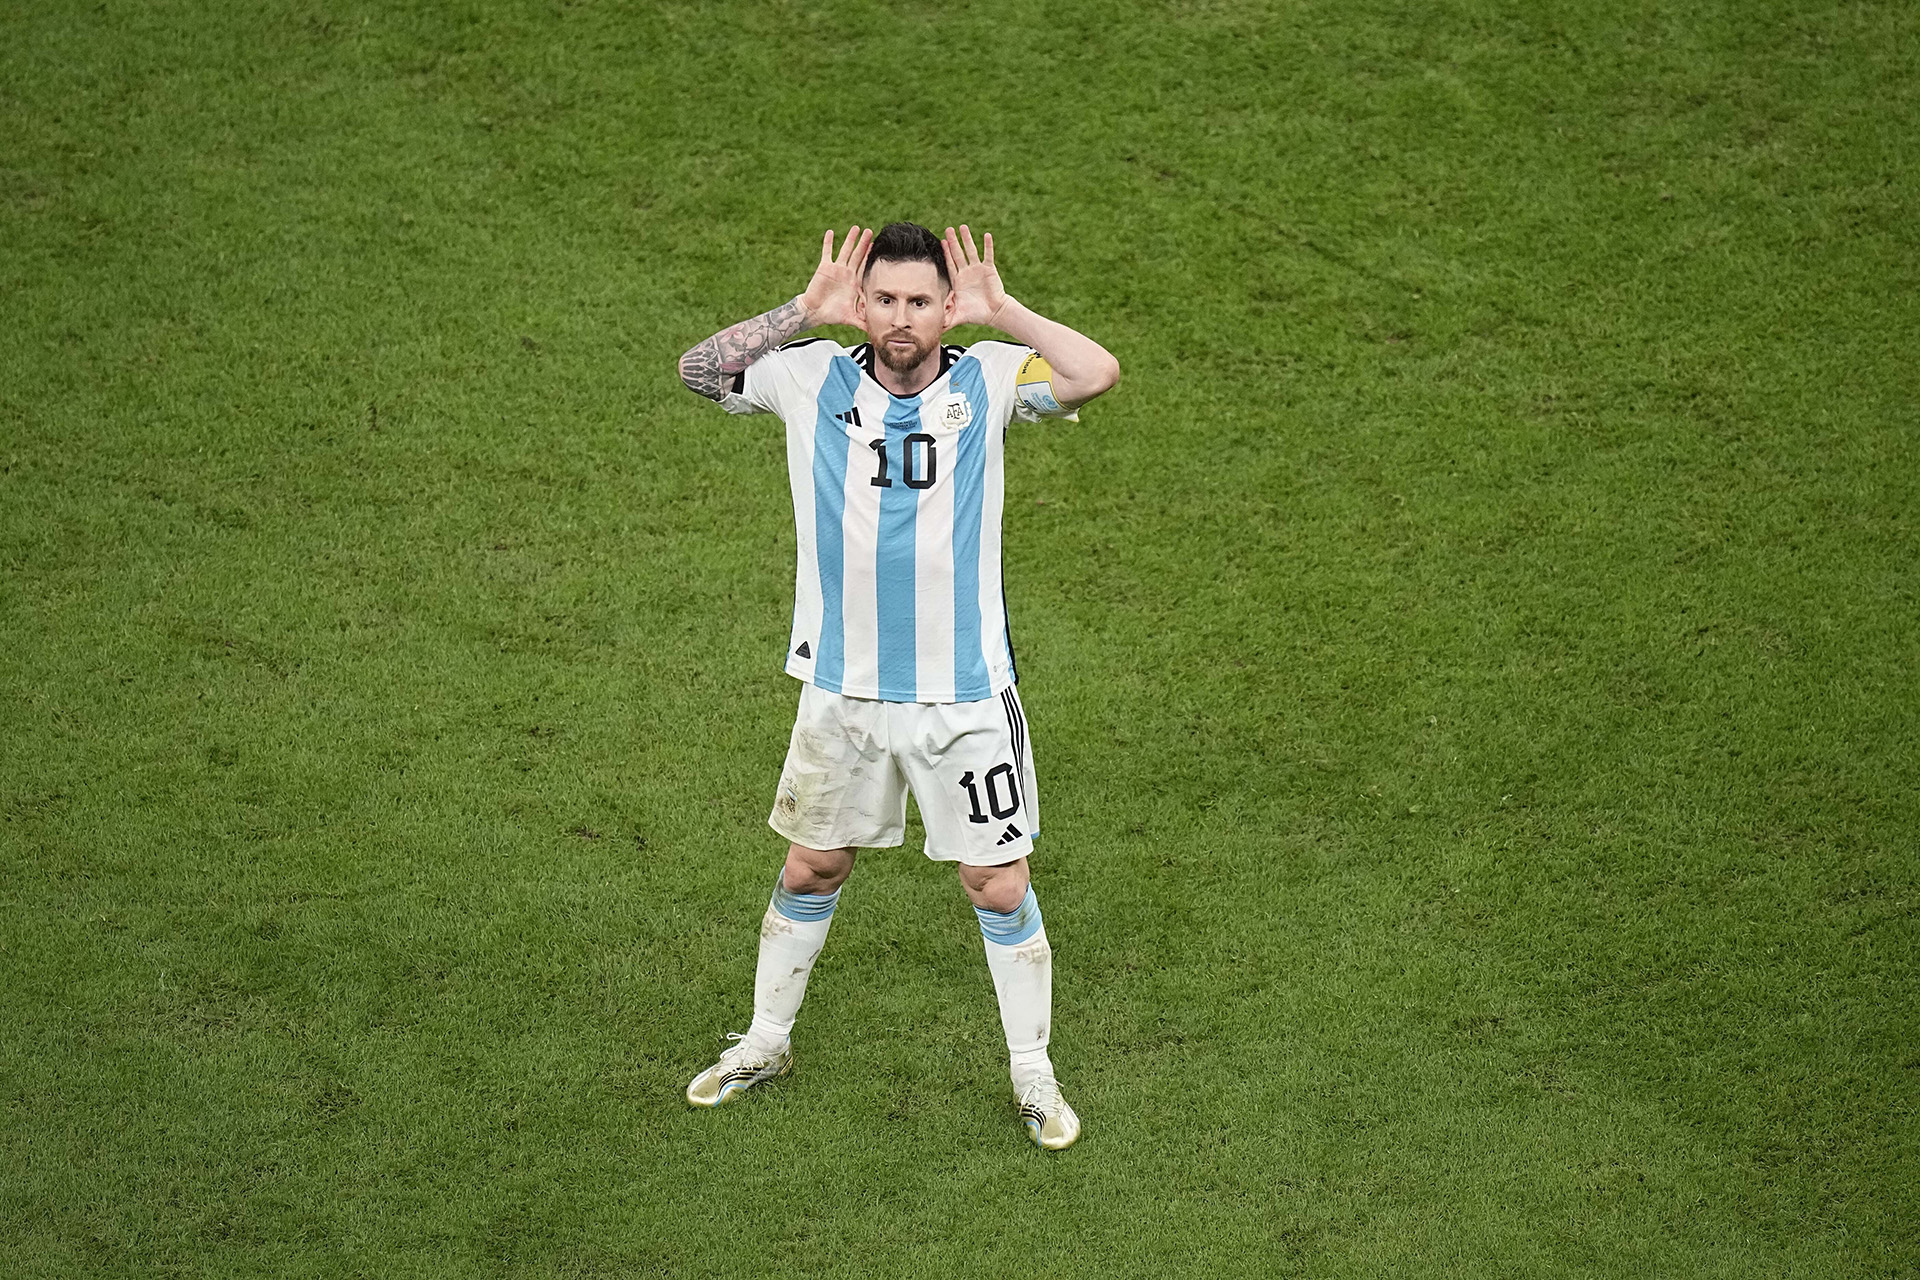 Messi celebra tras marcar el segundo gol de Argentina frente a Países Bajos (AP Photo/Ariel Schalit)